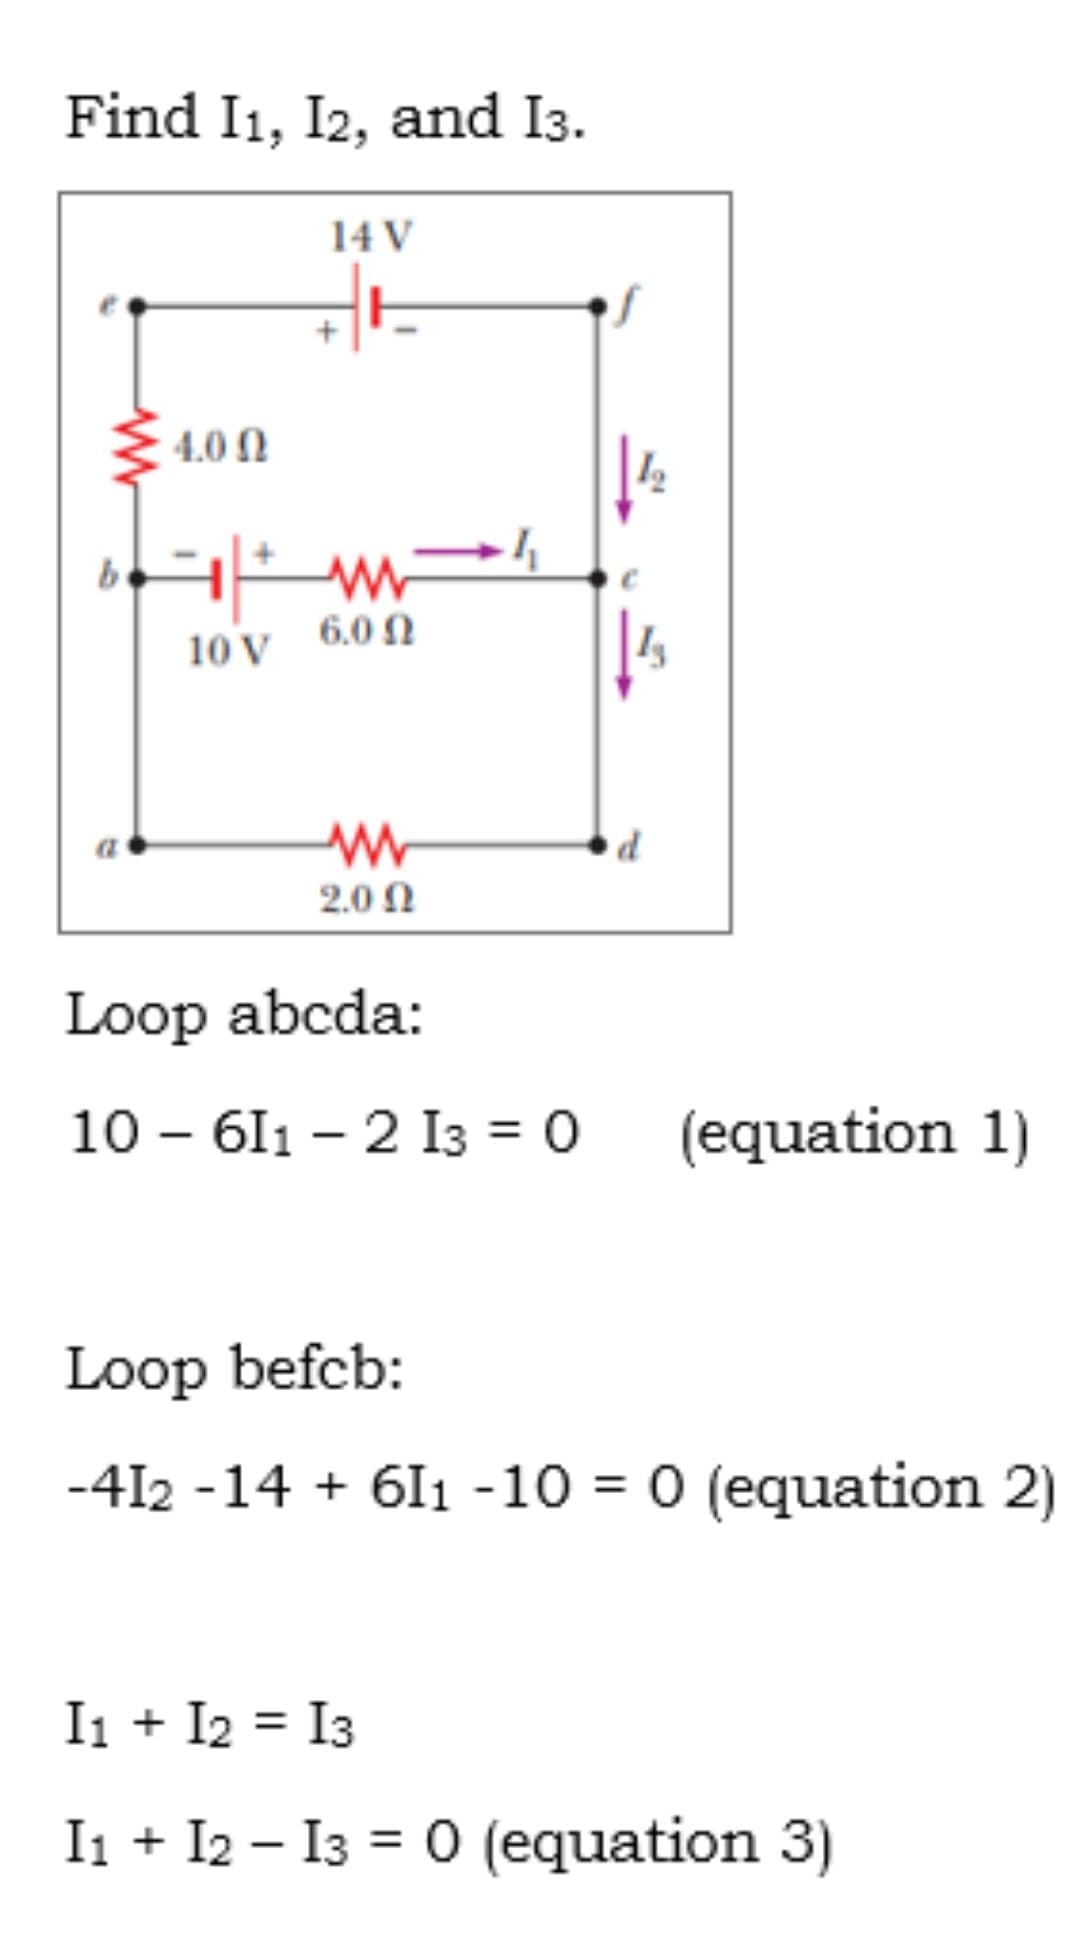 Find I1, I2, and I3.
14 V
4.0 N
be
6.0 N
10 V
2.0 Ω
Loop abcda:
10 – 611 – 2 I3 = 0
(equation 1)
Loop befcb:
-412 -14 + 61 -10 = 0 (equation 2)
Ii + I2 = I3
%3D
I1 + I2 – I3 = 0 (equation 3)
